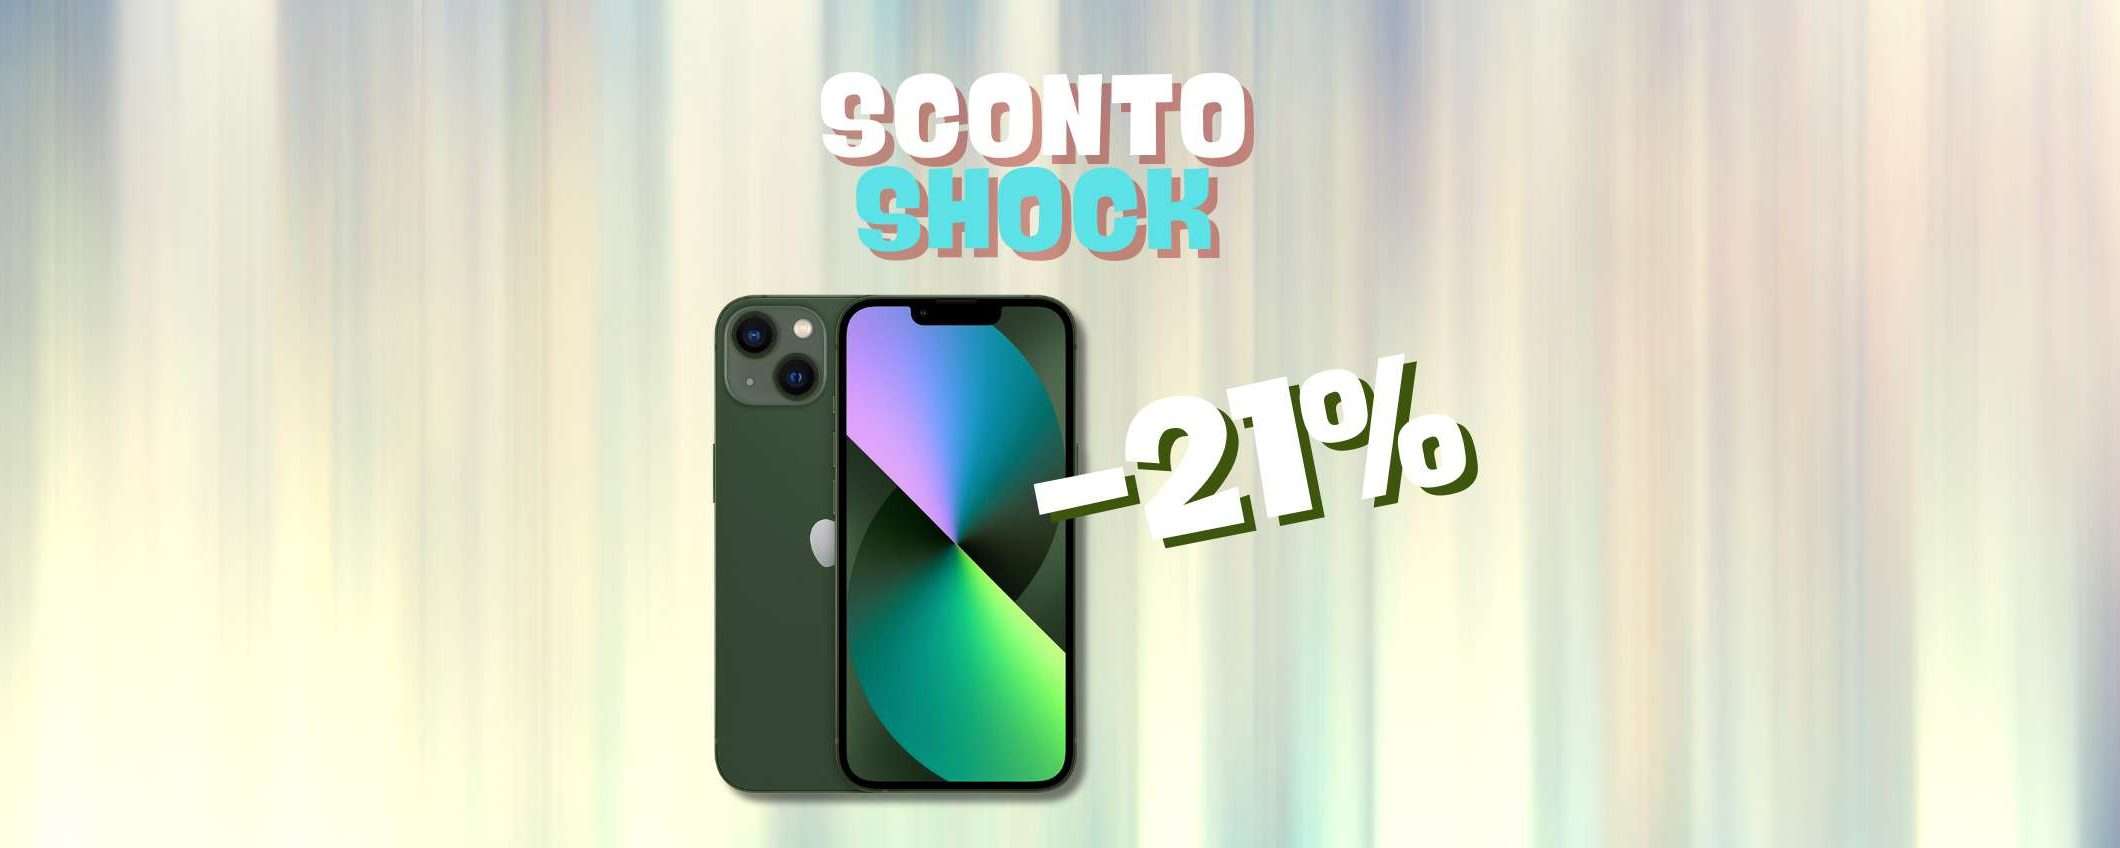 iPhone 13 a un prezzo SHOCK (-21%)